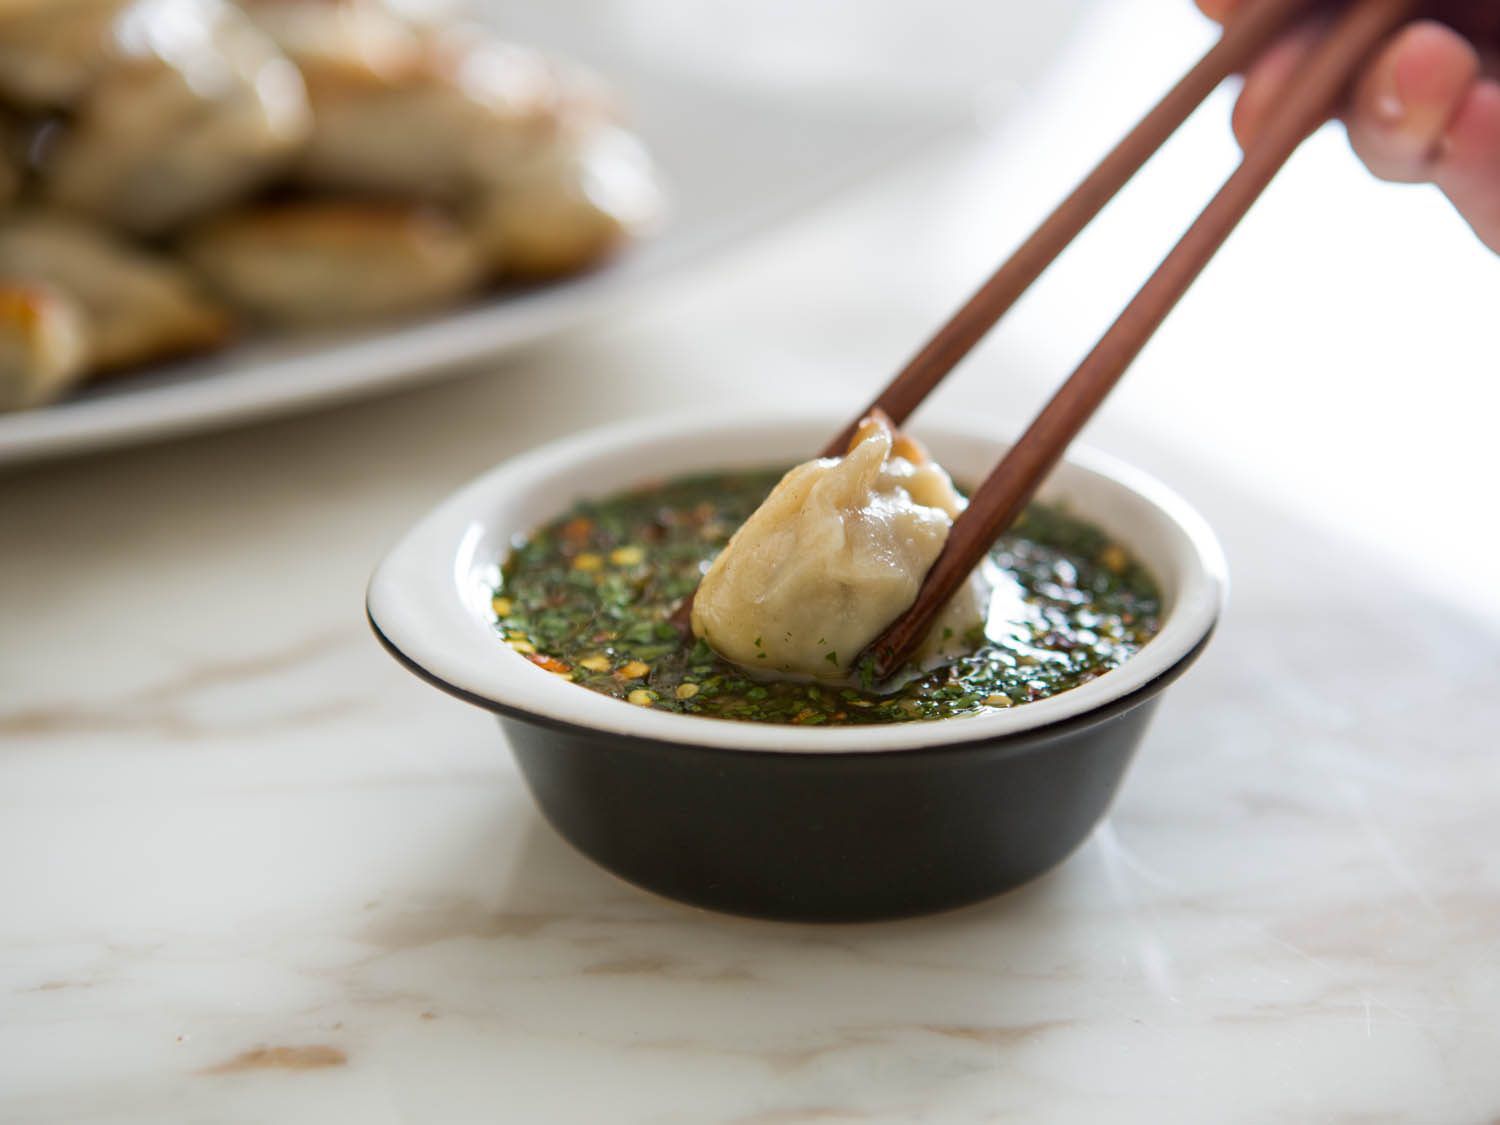 用筷子将饺子蘸上鱼露。